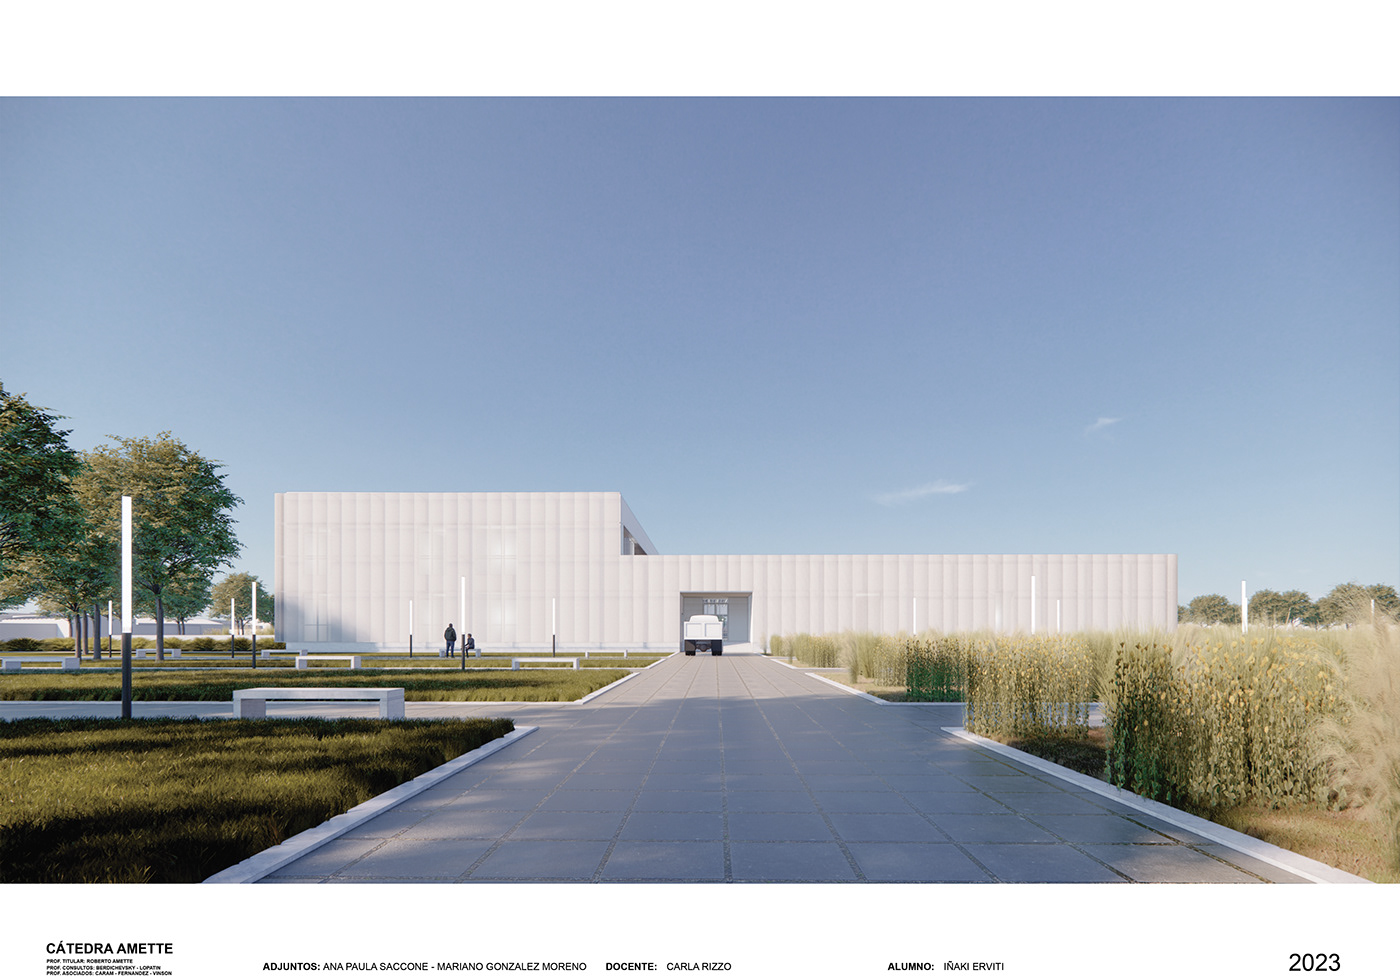 Steel Structure laboratories agriculture Sustainability Landscape Design 3D architecture SketchUP enscape AutoCAD